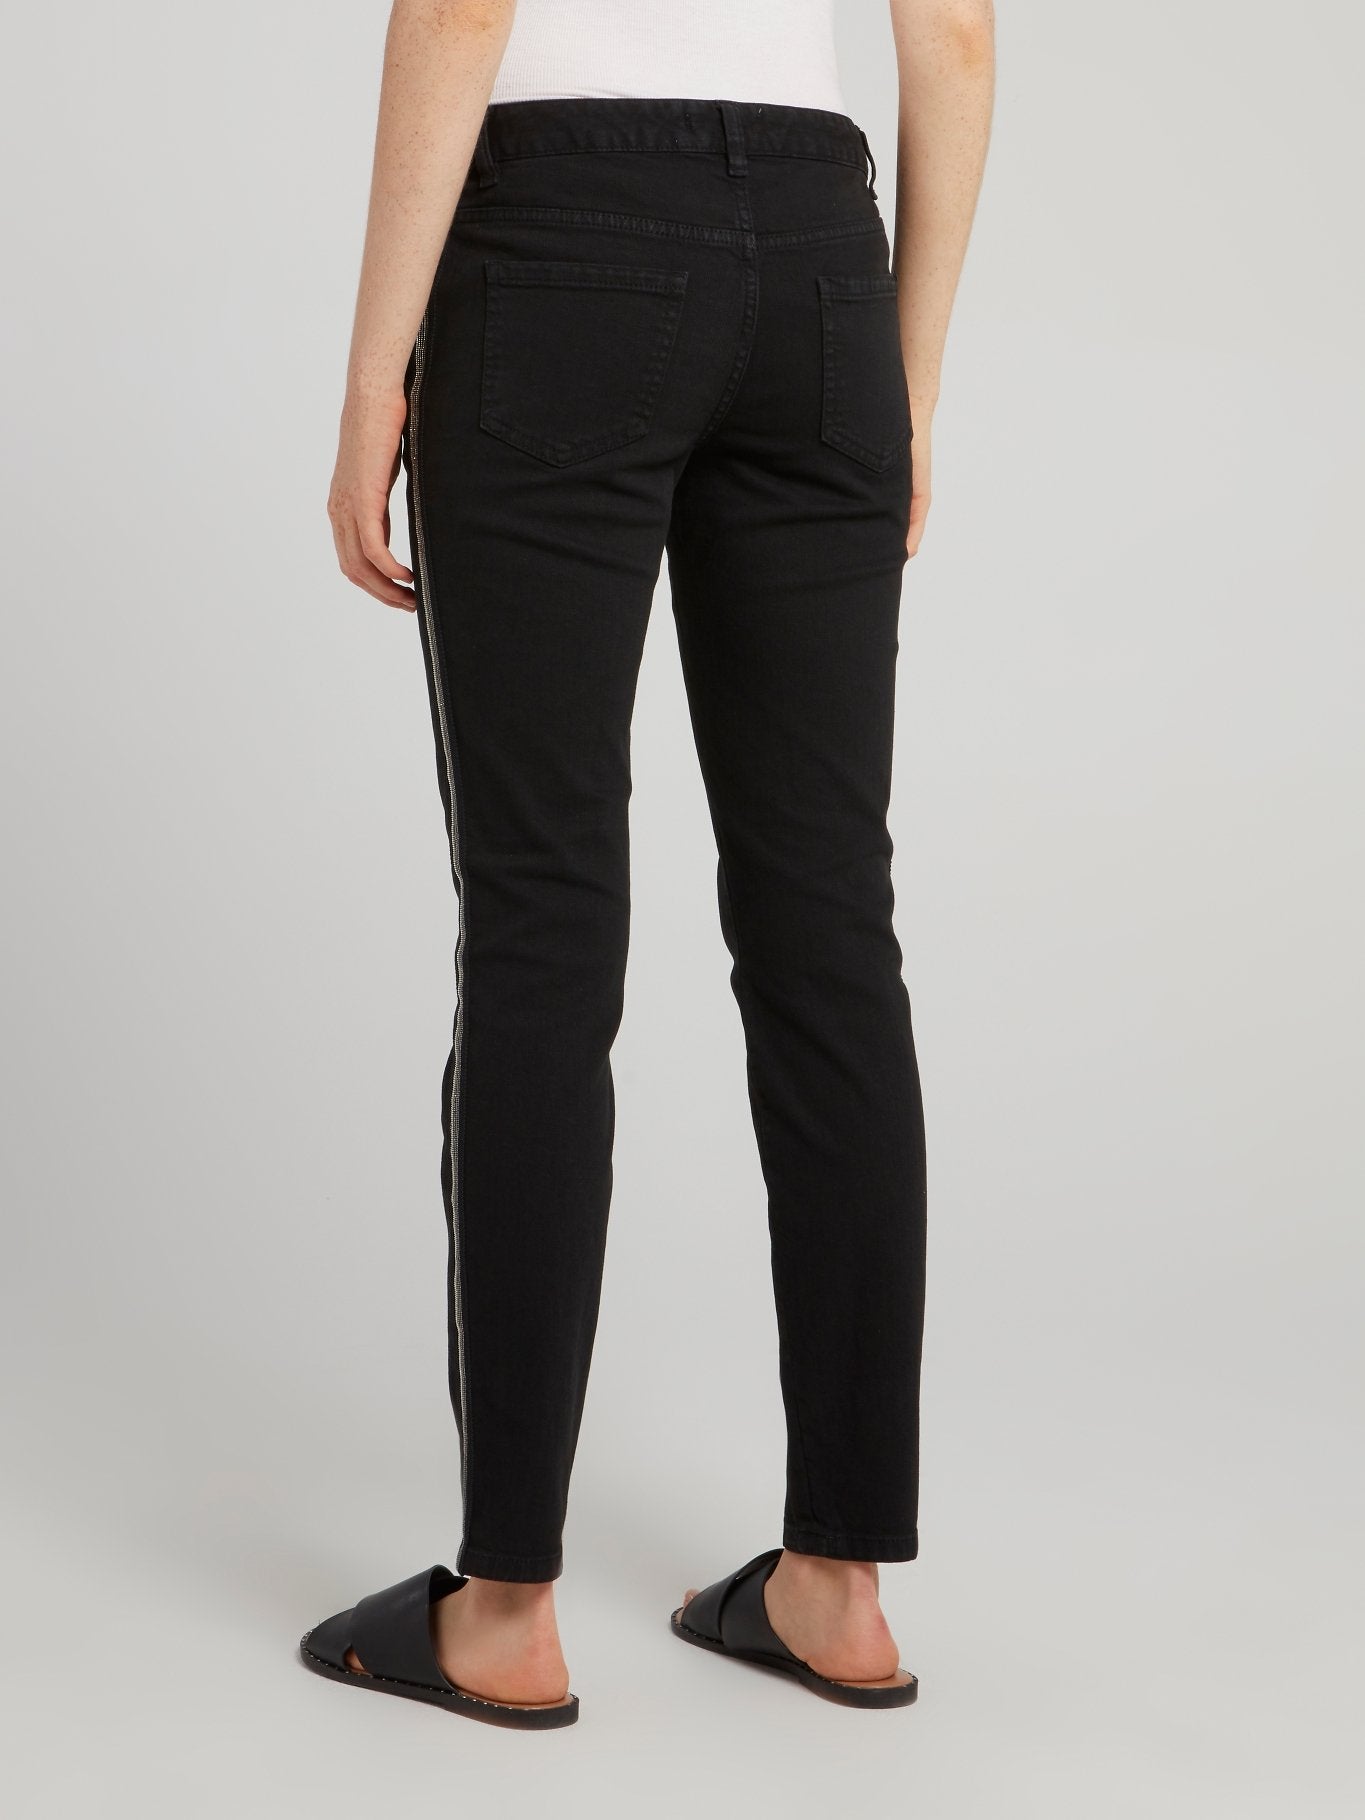 Black Side Stripe Jeans